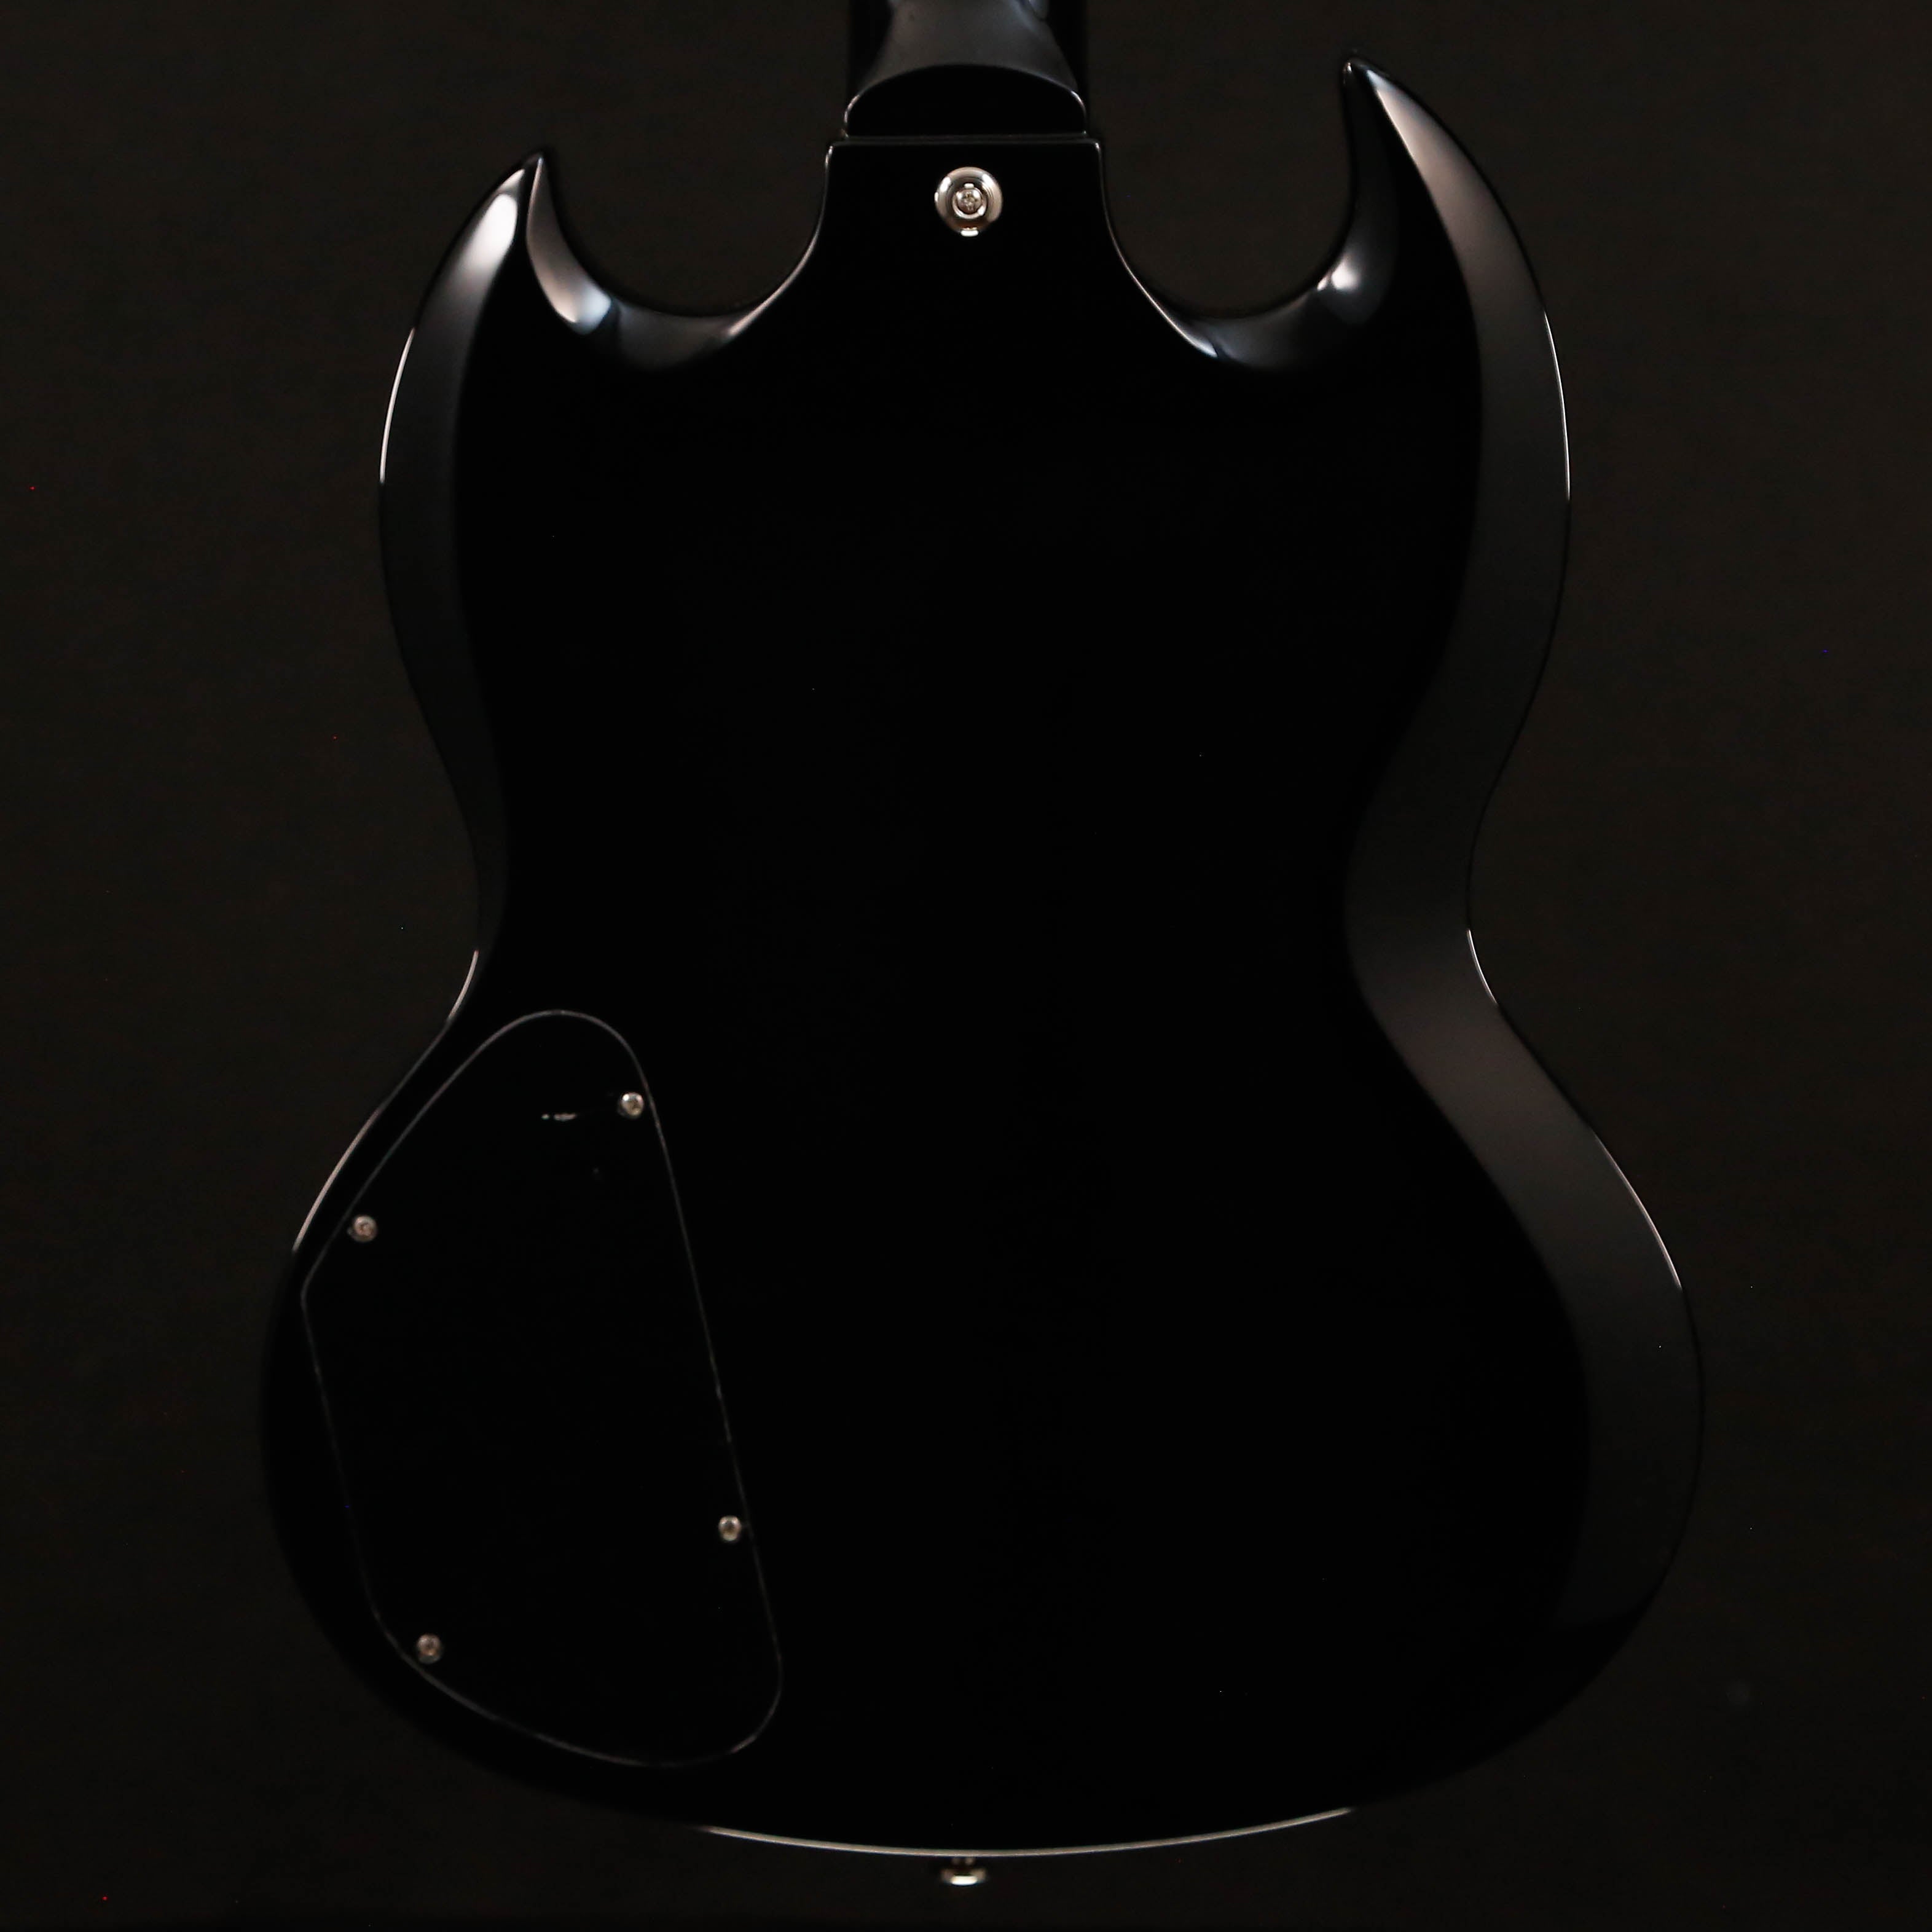 Epiphone EB-3 Bass (2 Pickup), Ebony, Chrome